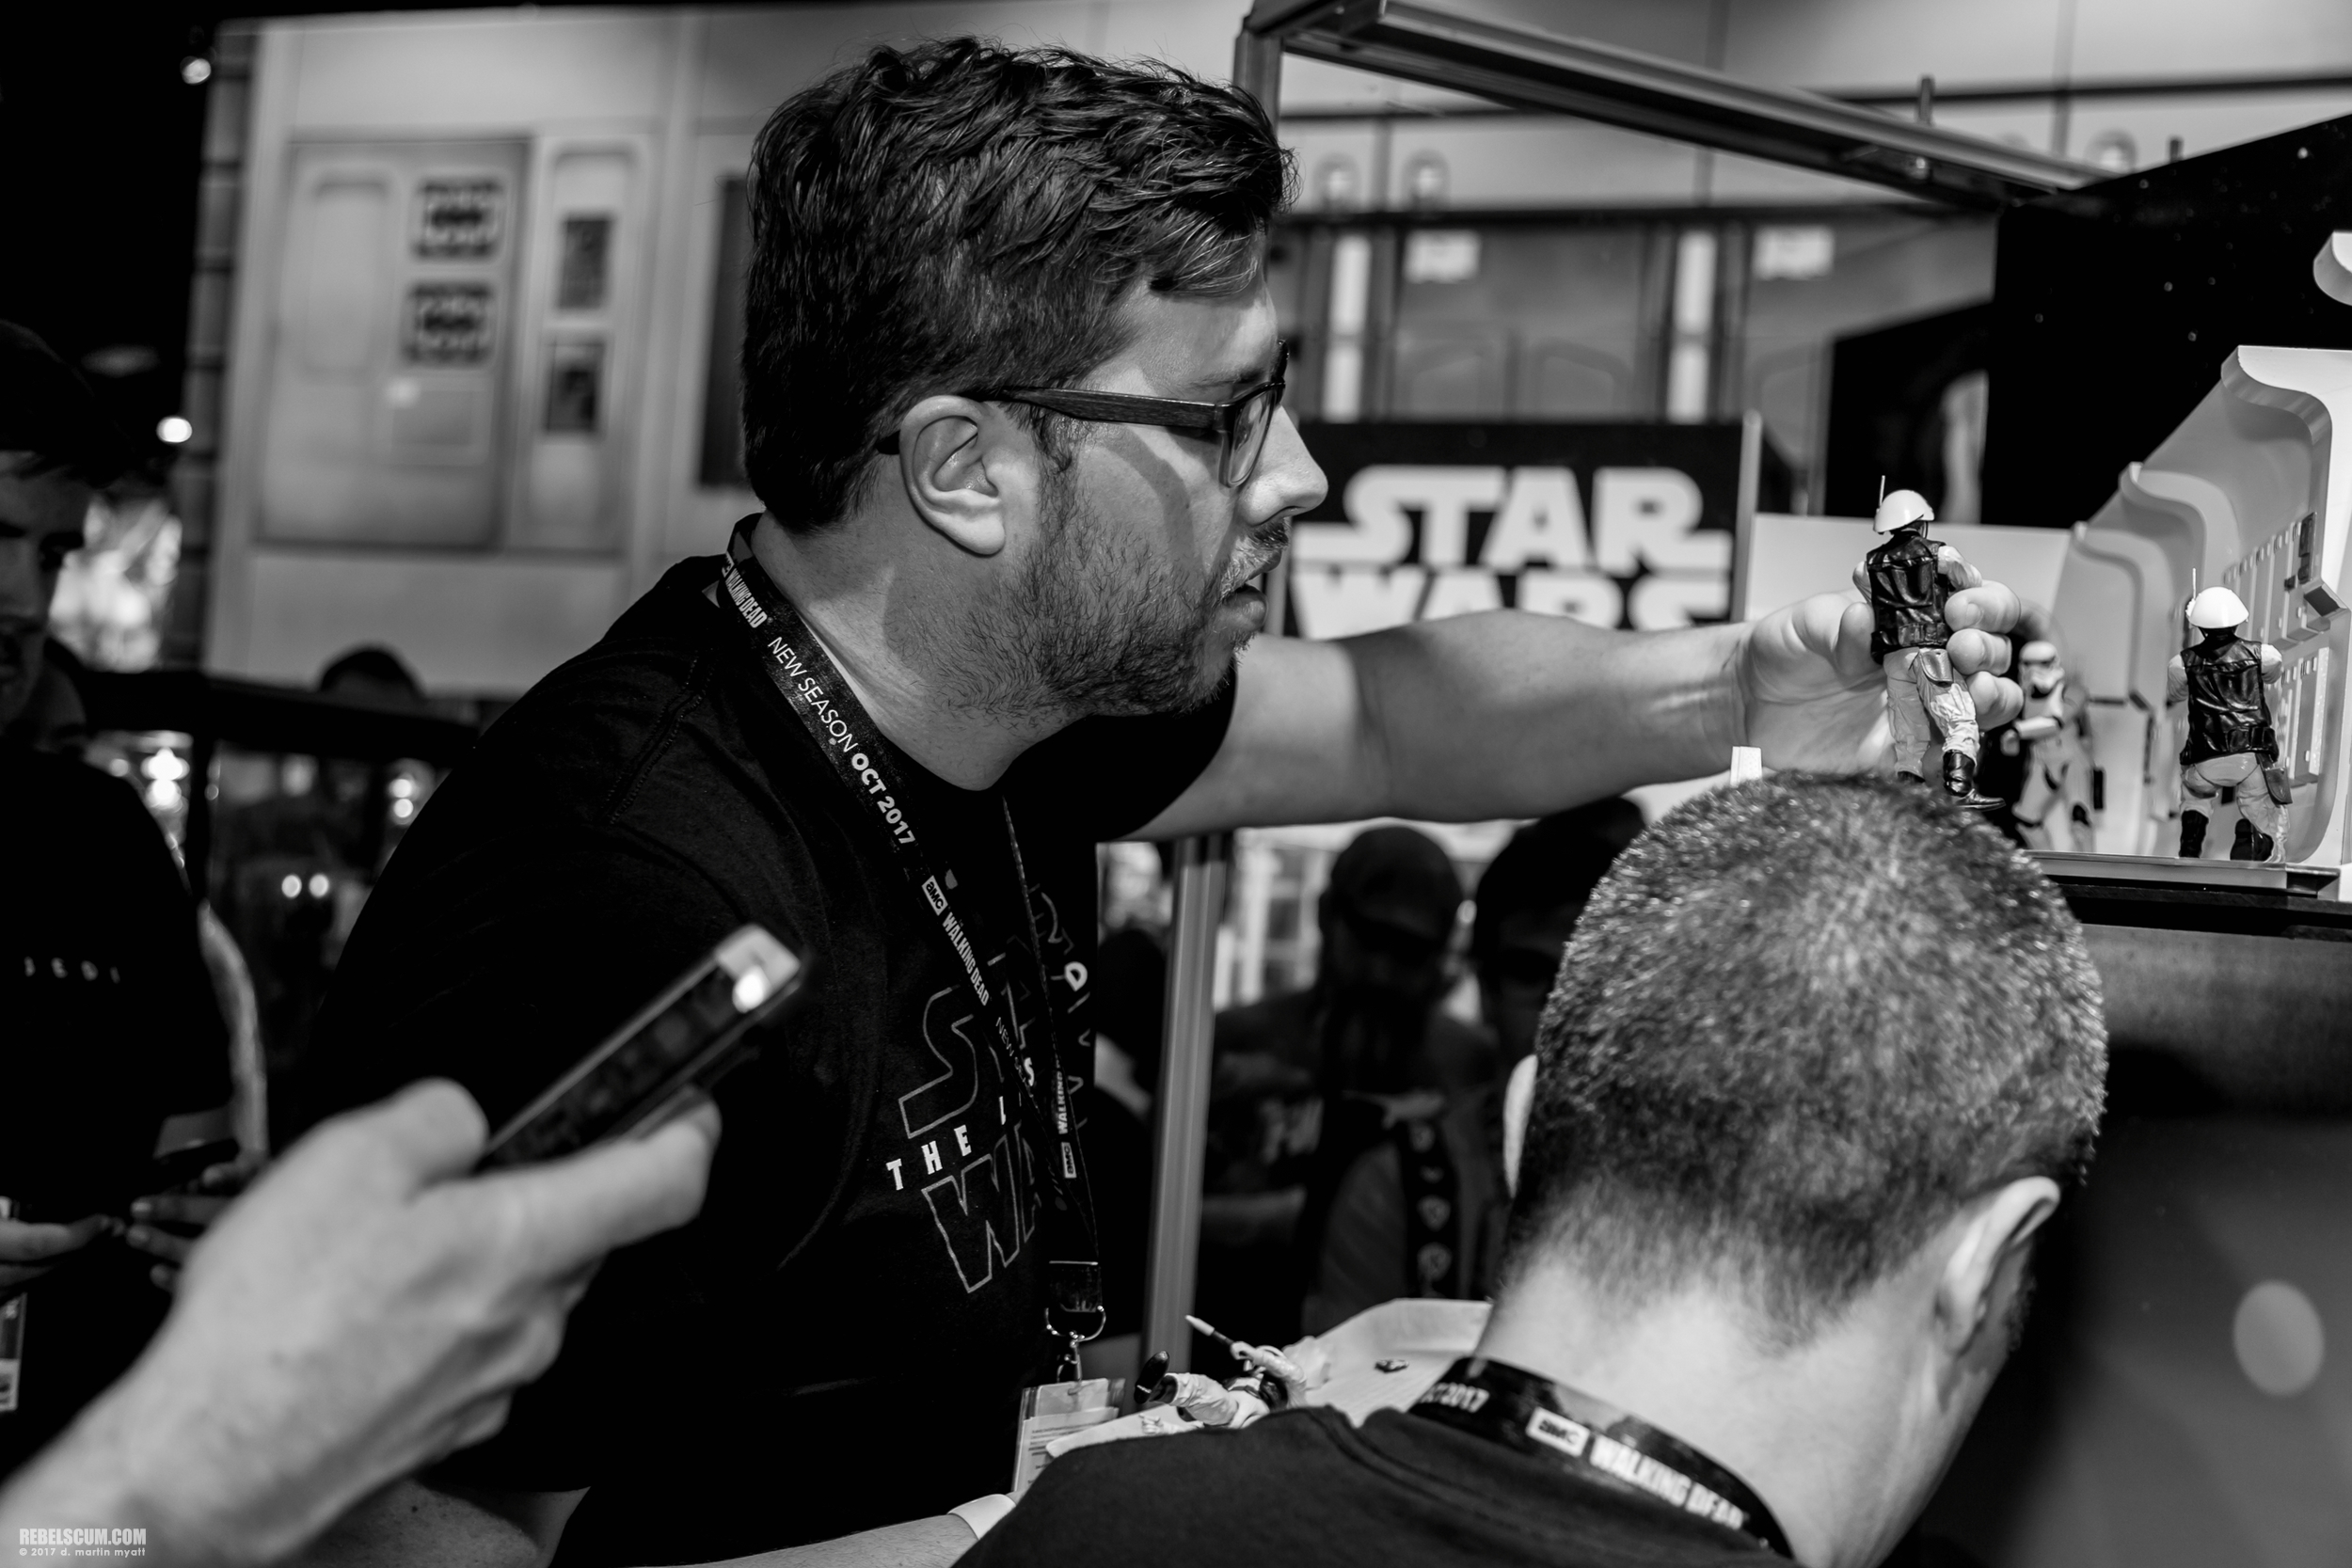 San-Diego-Comic-Con-2017-Star-Wars-Hasbro-Friday-038.jpg